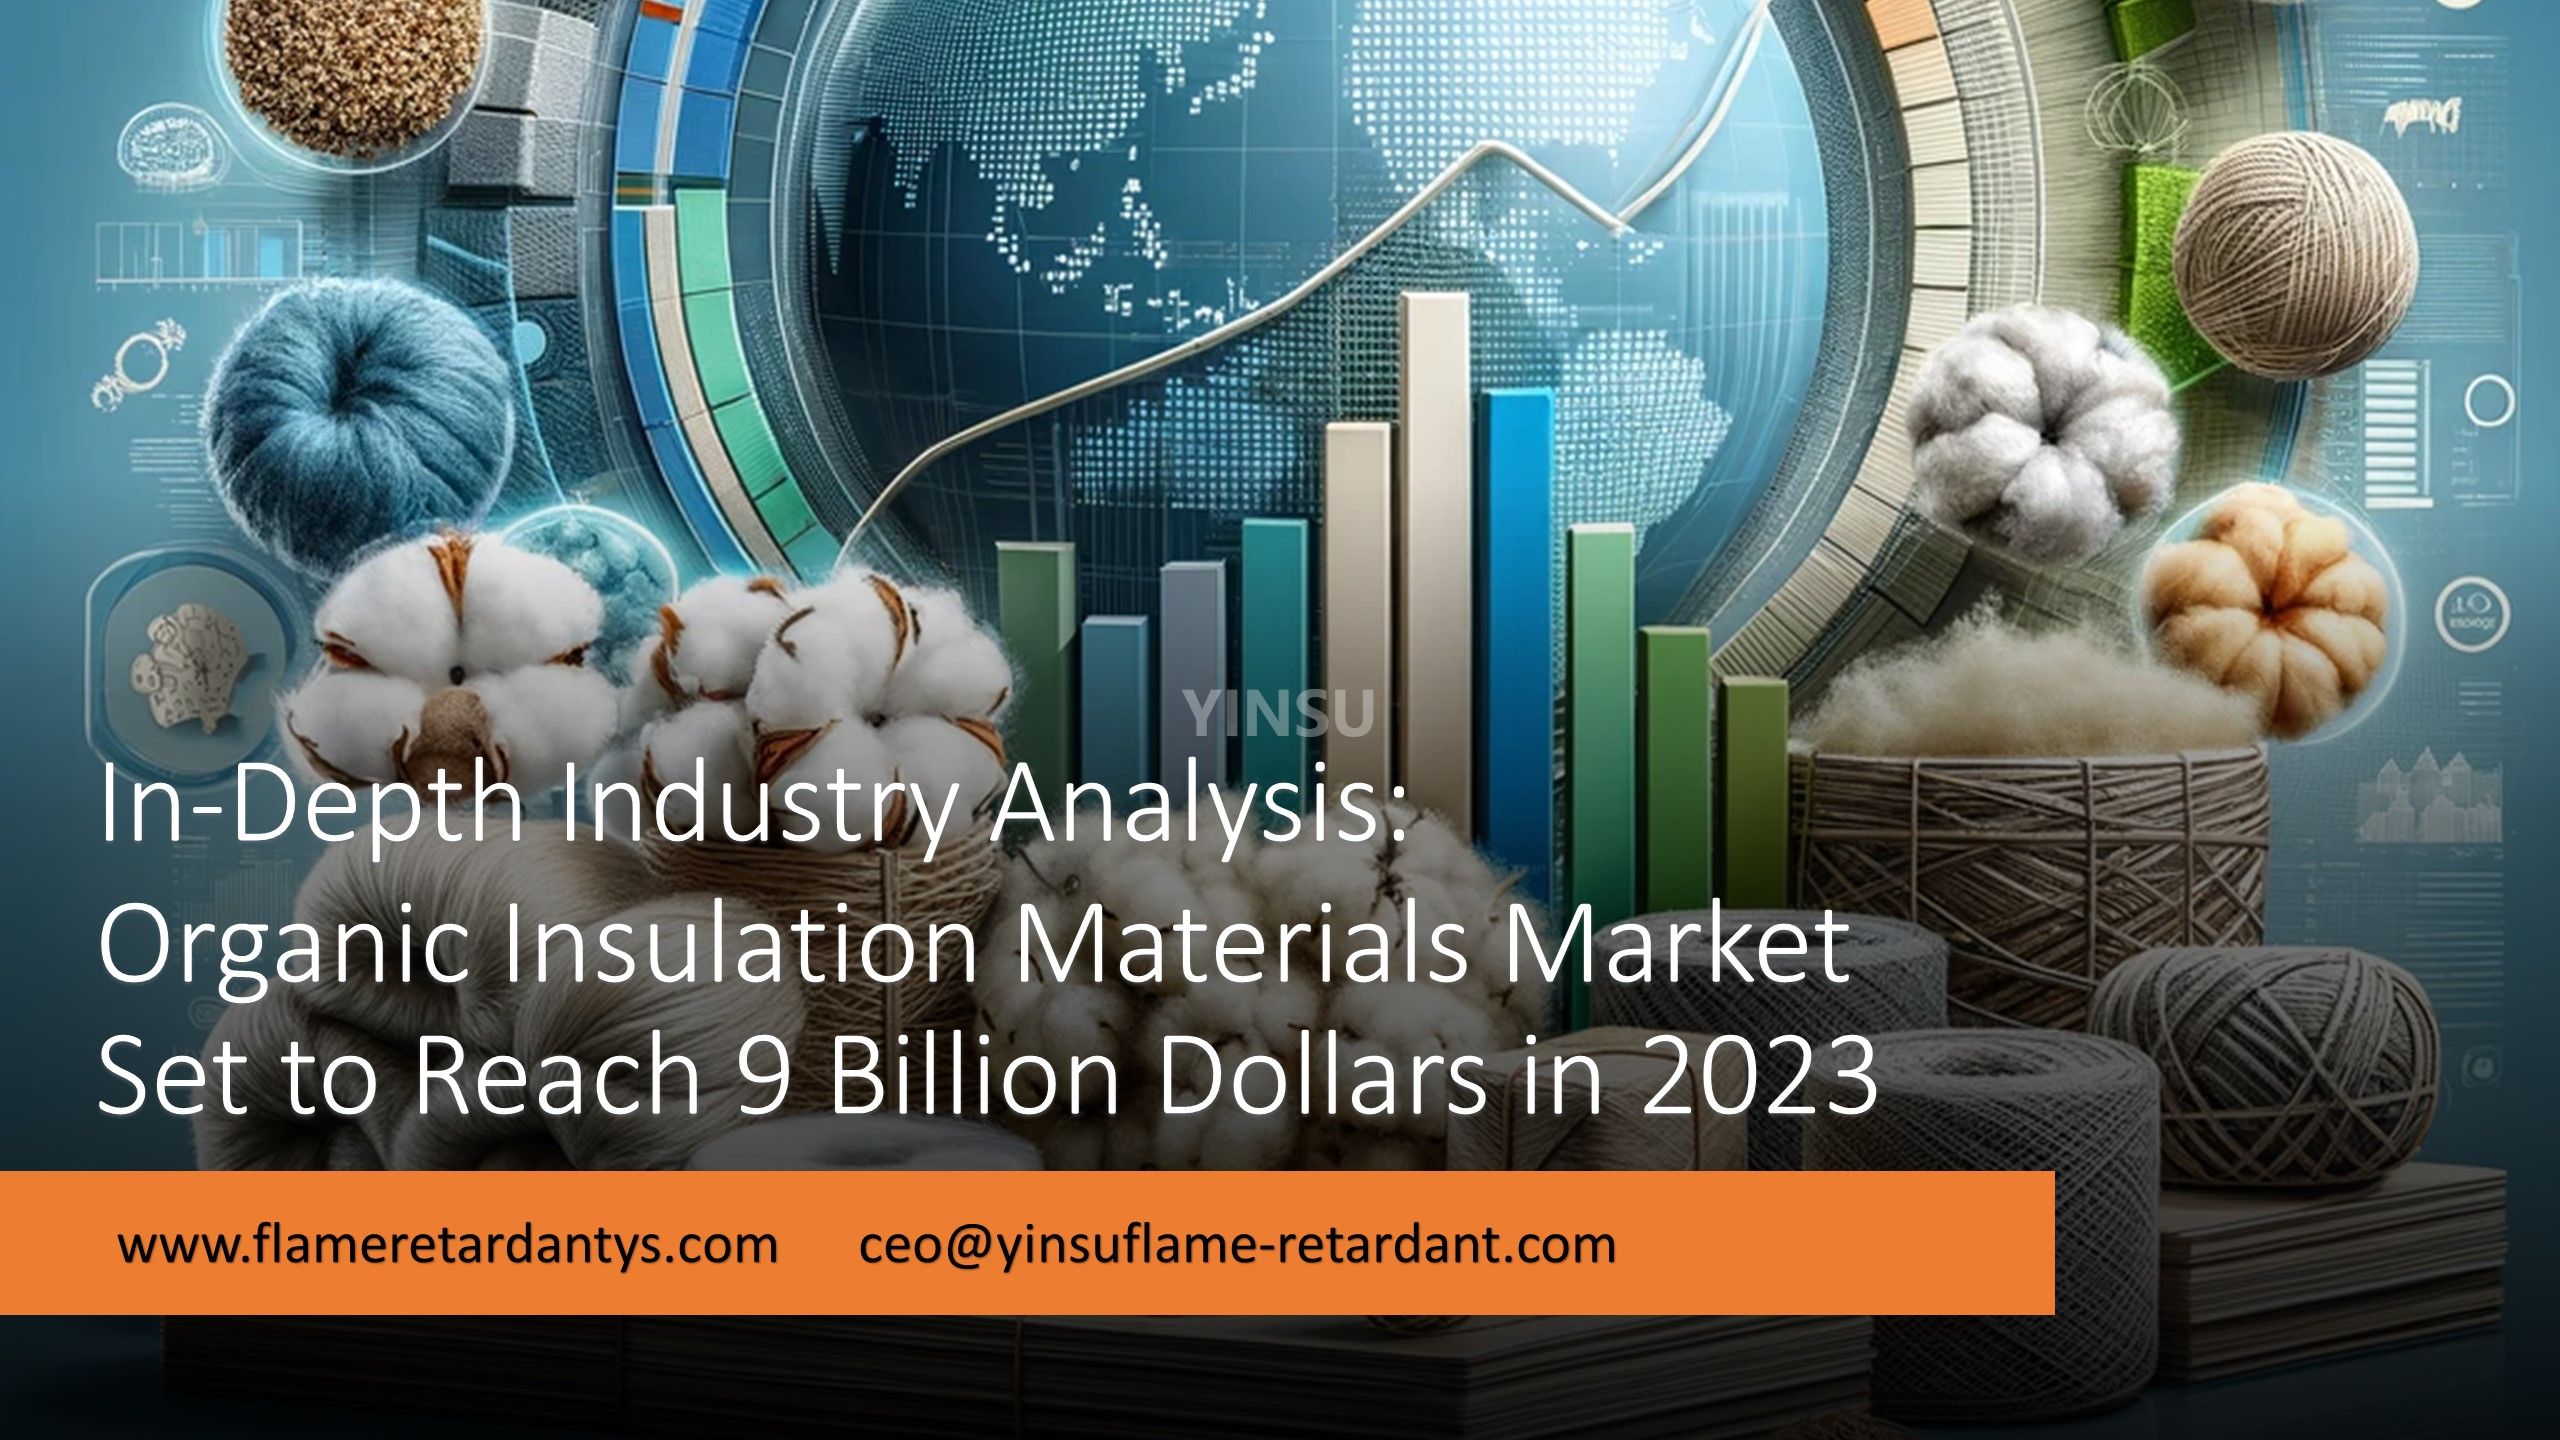 تحليل متعمق للصناعة: من المتوقع أن يصل سوق المواد العازلة العضوية إلى 9 مليارات دولار في عام 2023